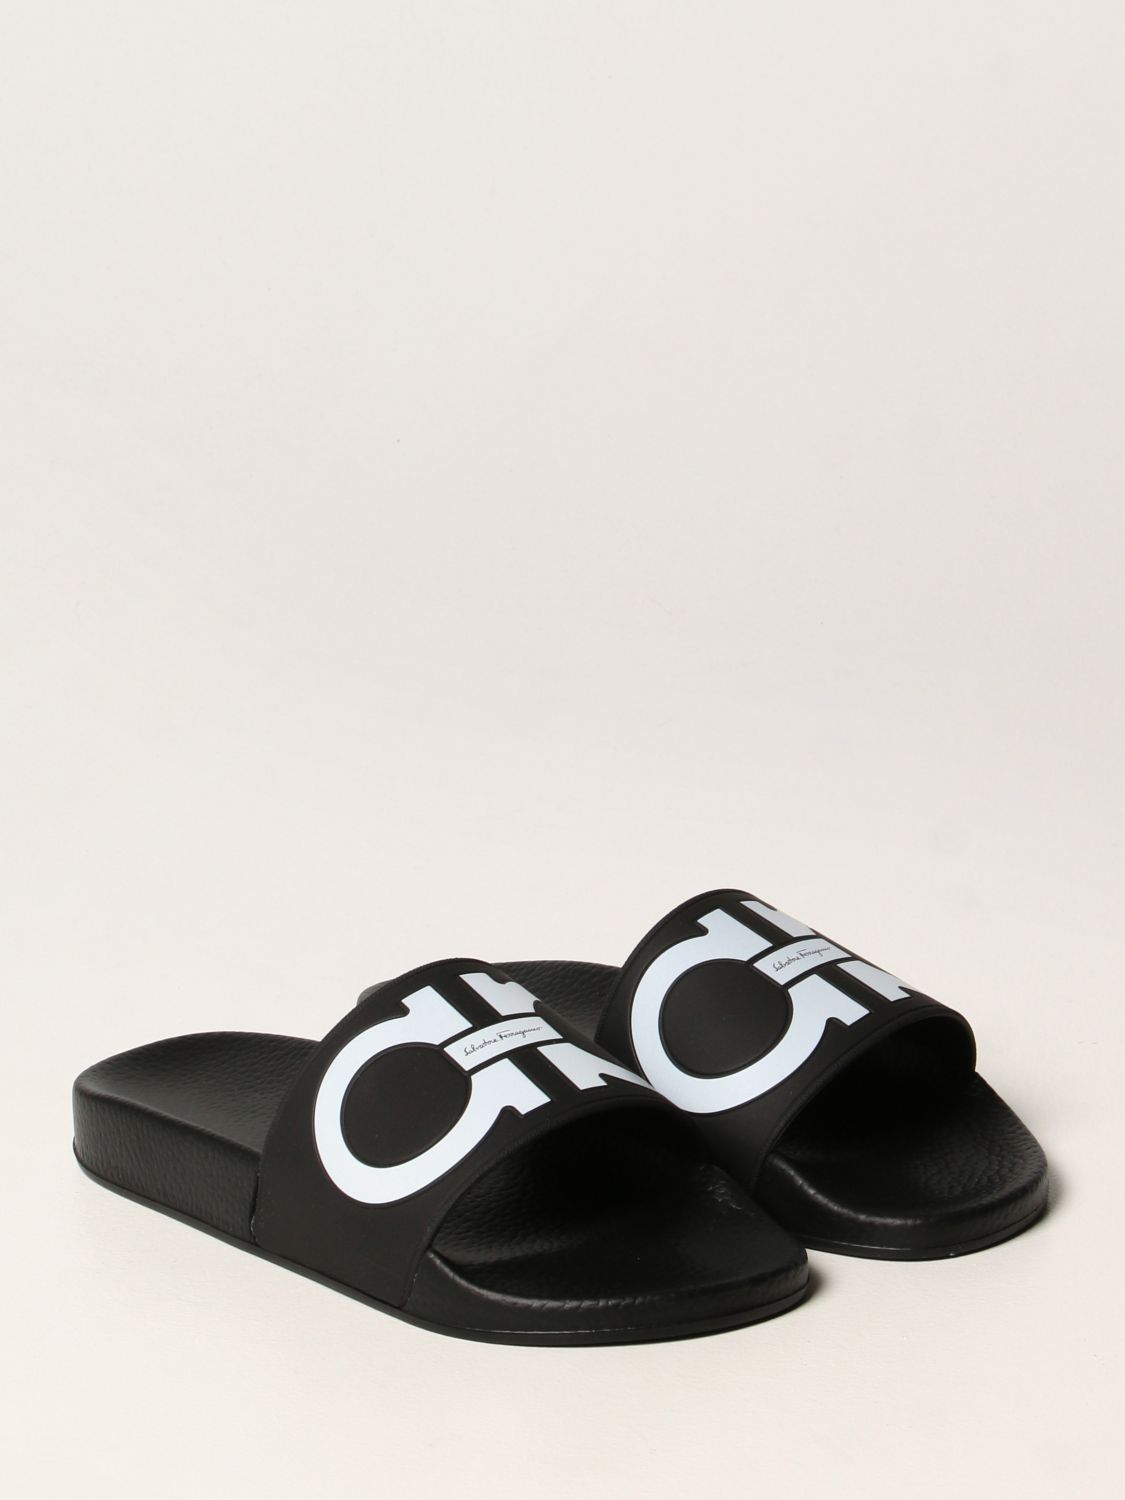 Босоножки без каблука Salvatore Ferragamo: Обувь Женское Salvatore Ferragamo черный 2